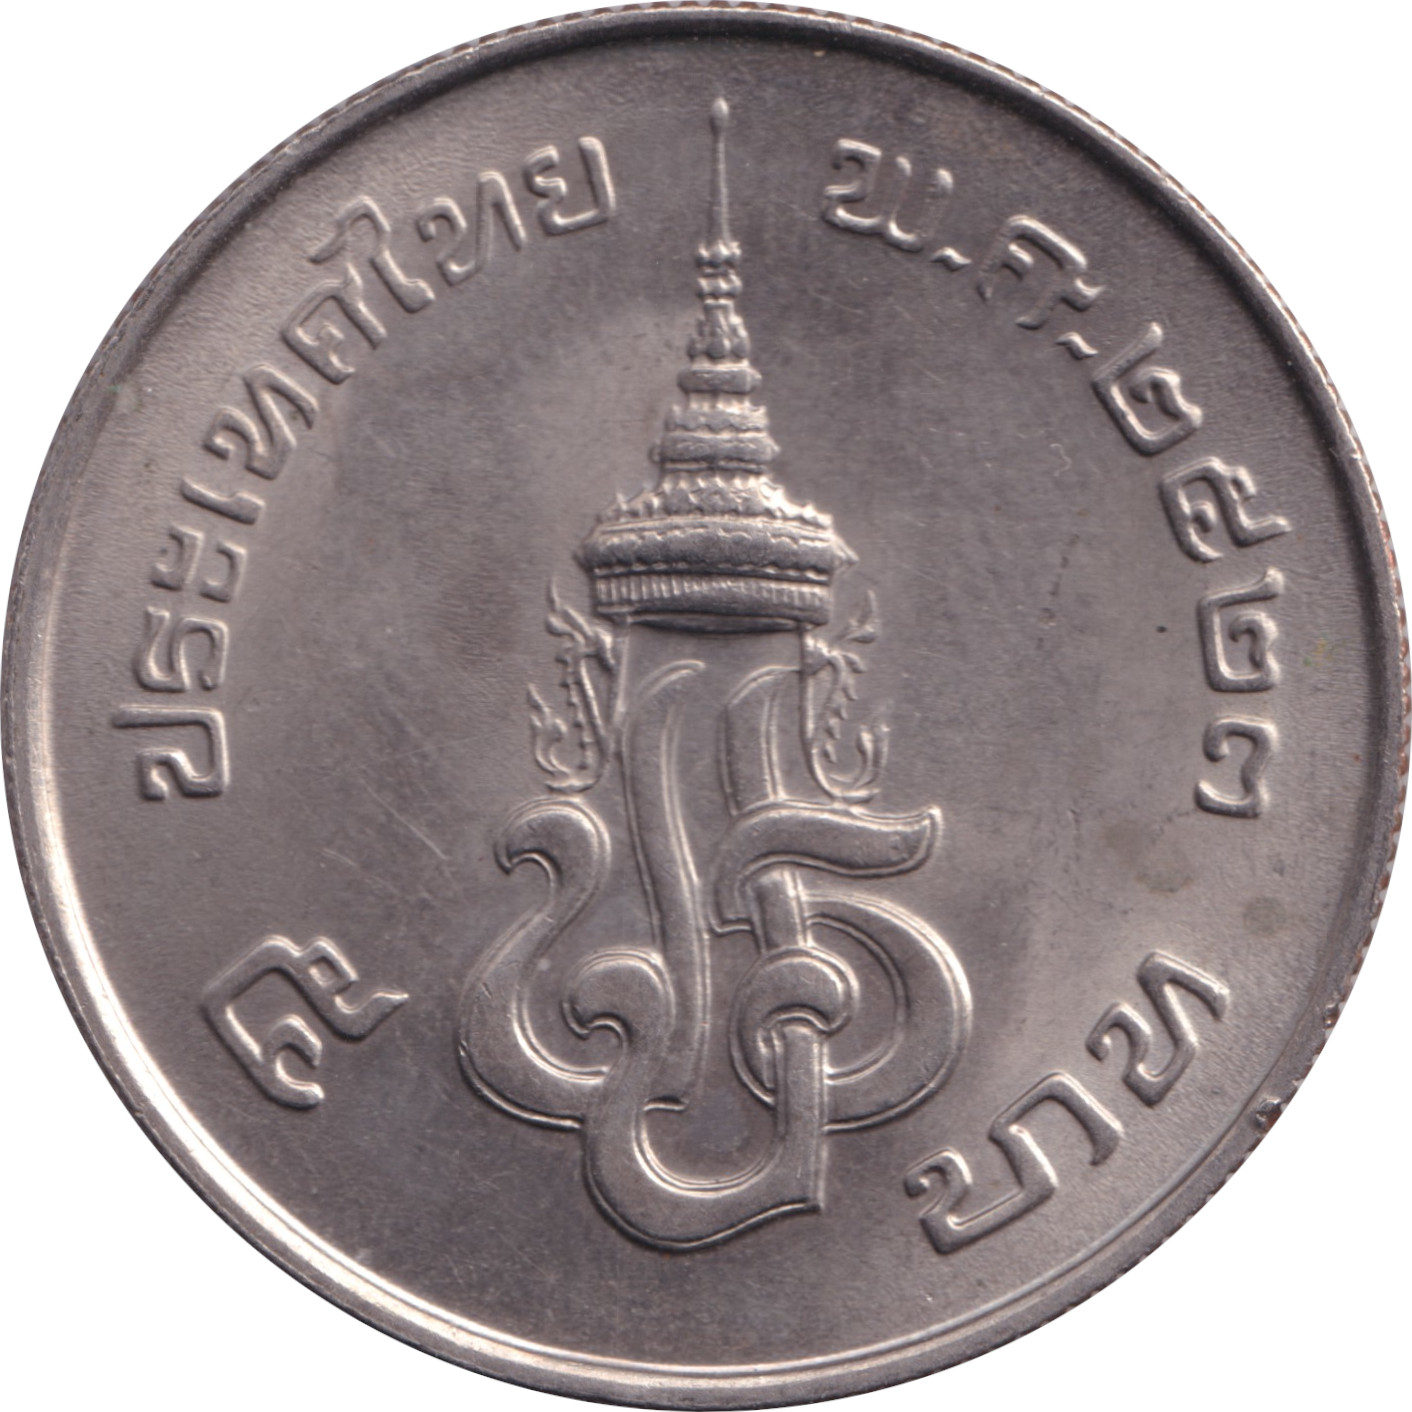 5 baht - Monarchie Constitutionelle